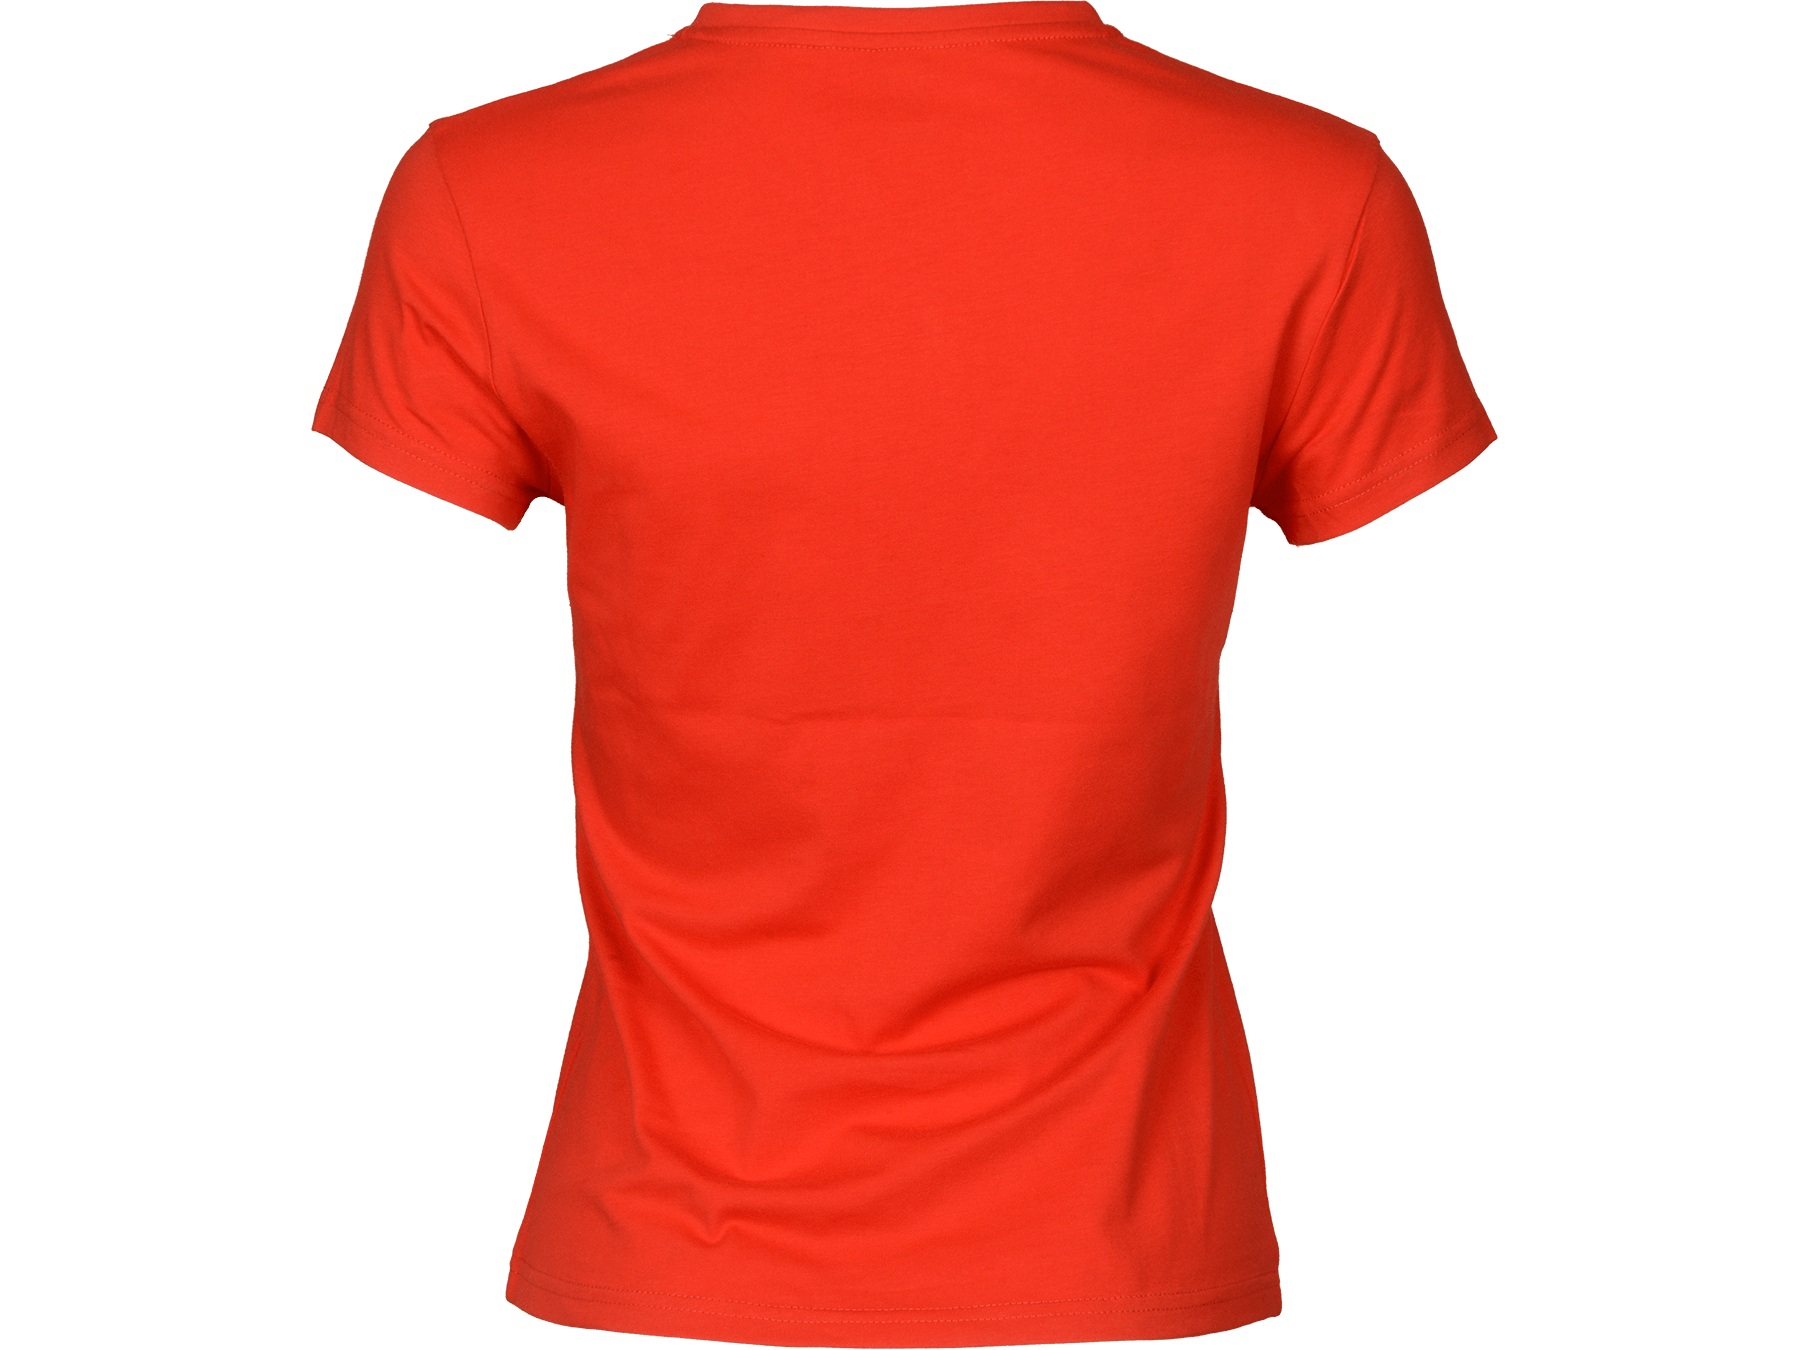 Orange and Red K Logo - LOGO TEE - K-Swiss